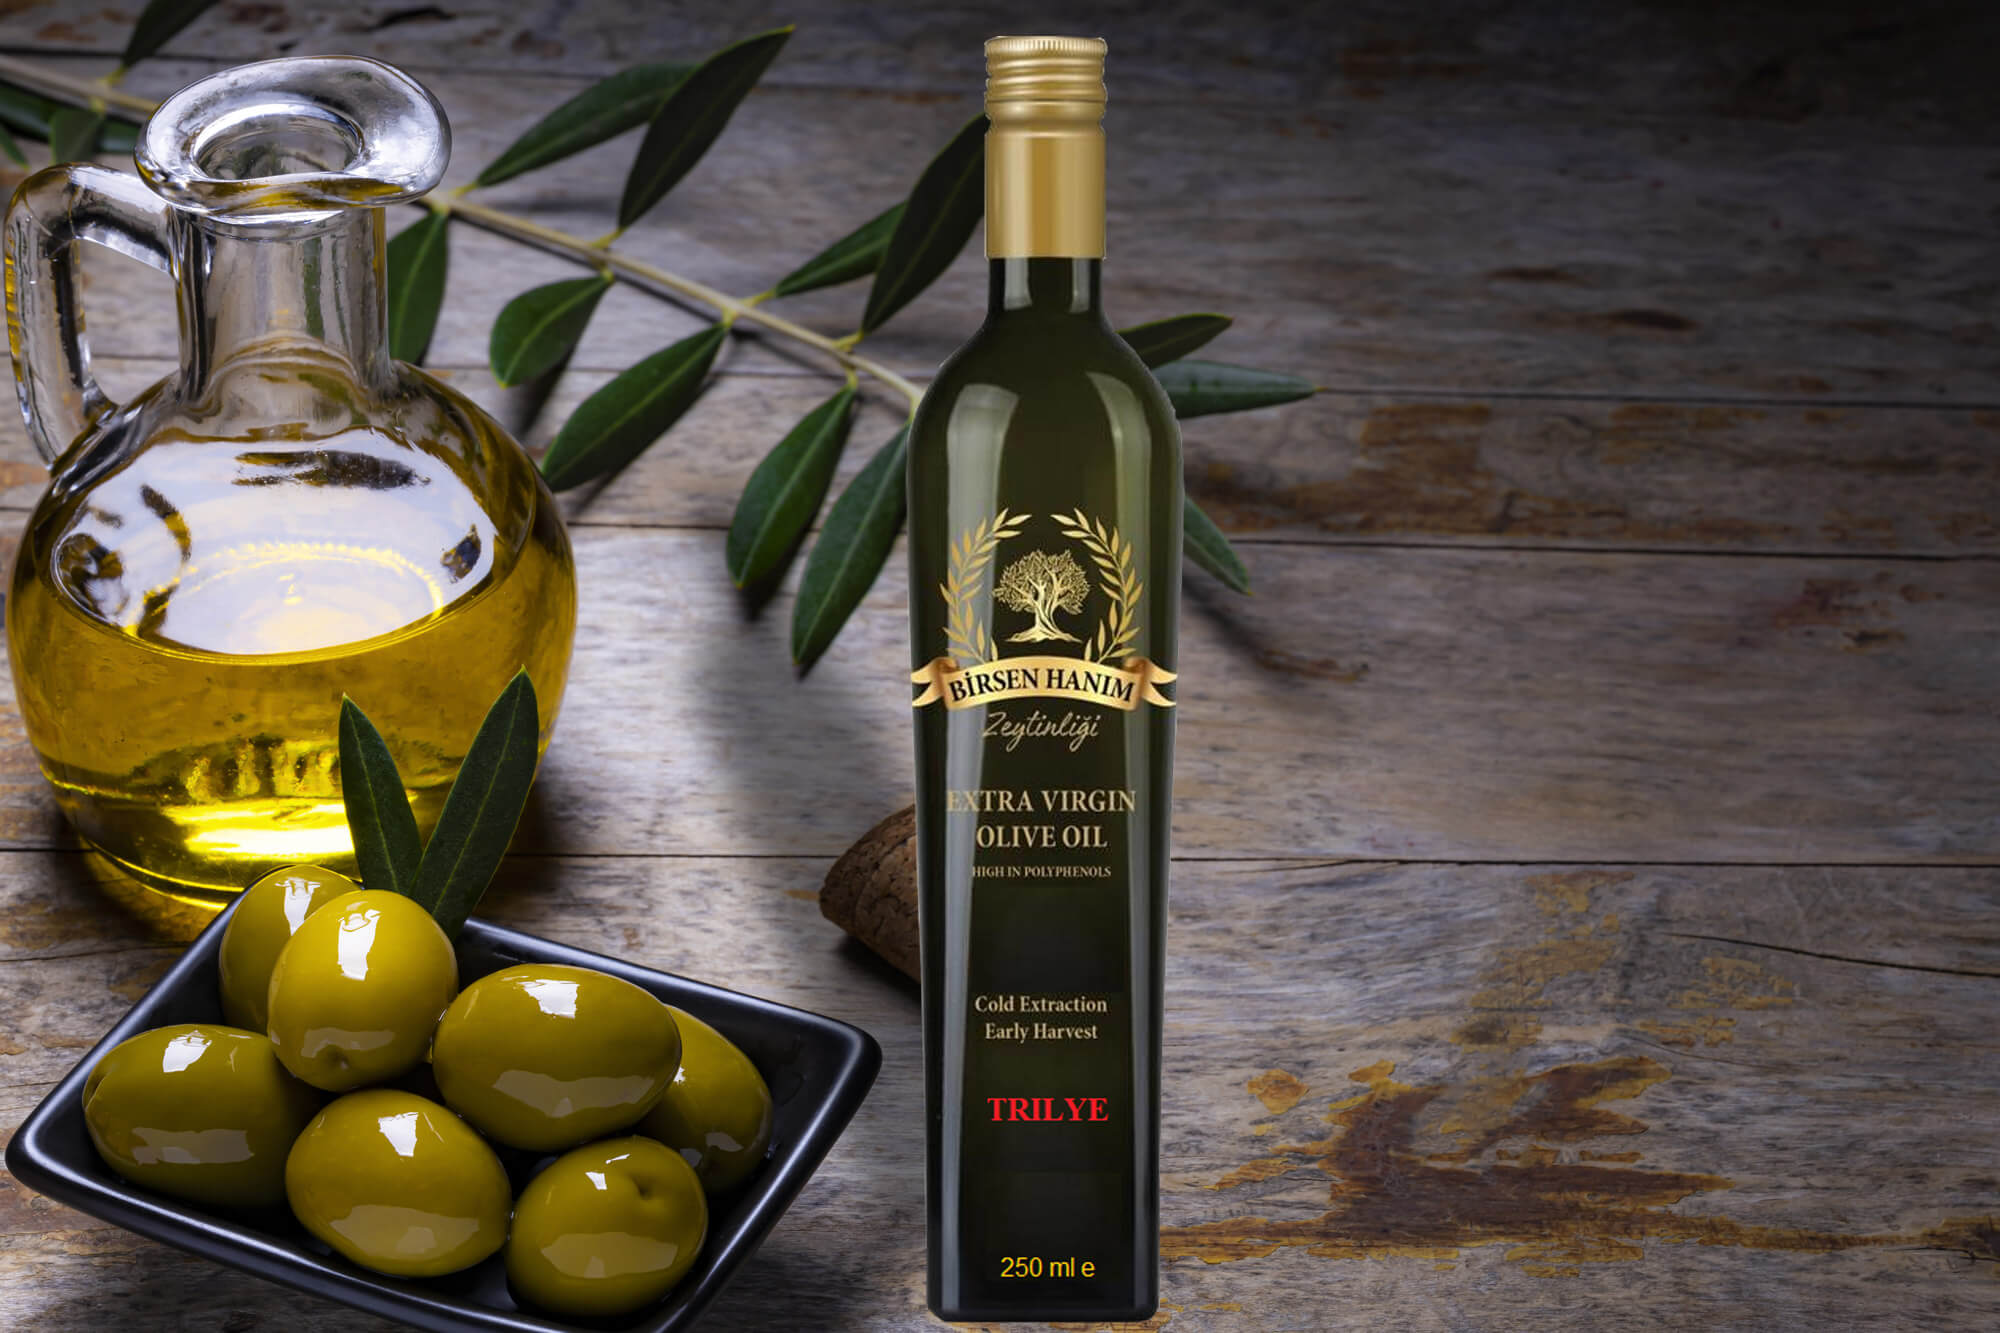 Trilye Olive Oil